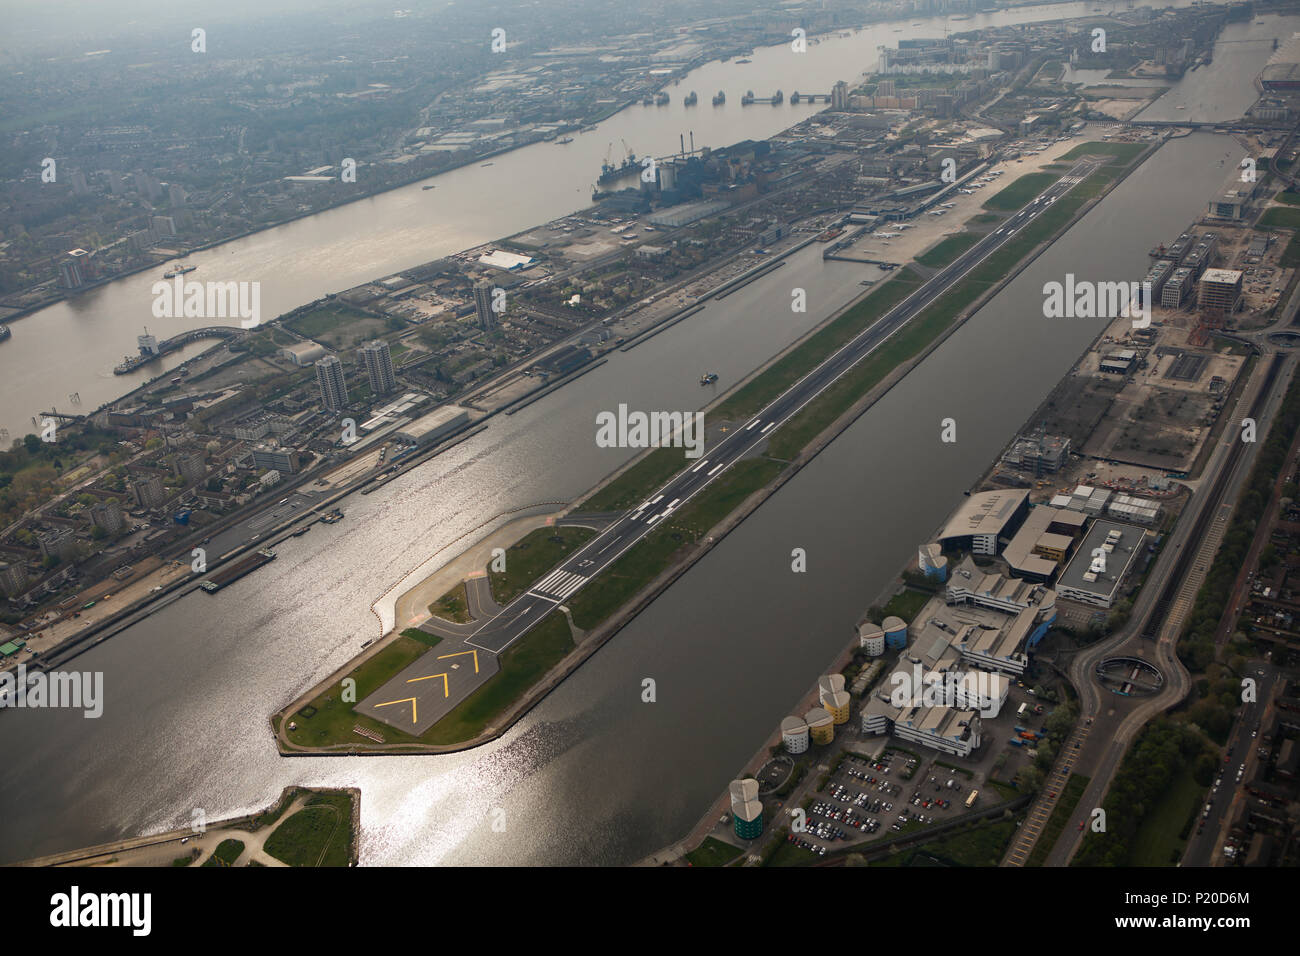 Une vue aérienne de l'aéroport de London City sur un jour brumeux de l'été Banque D'Images